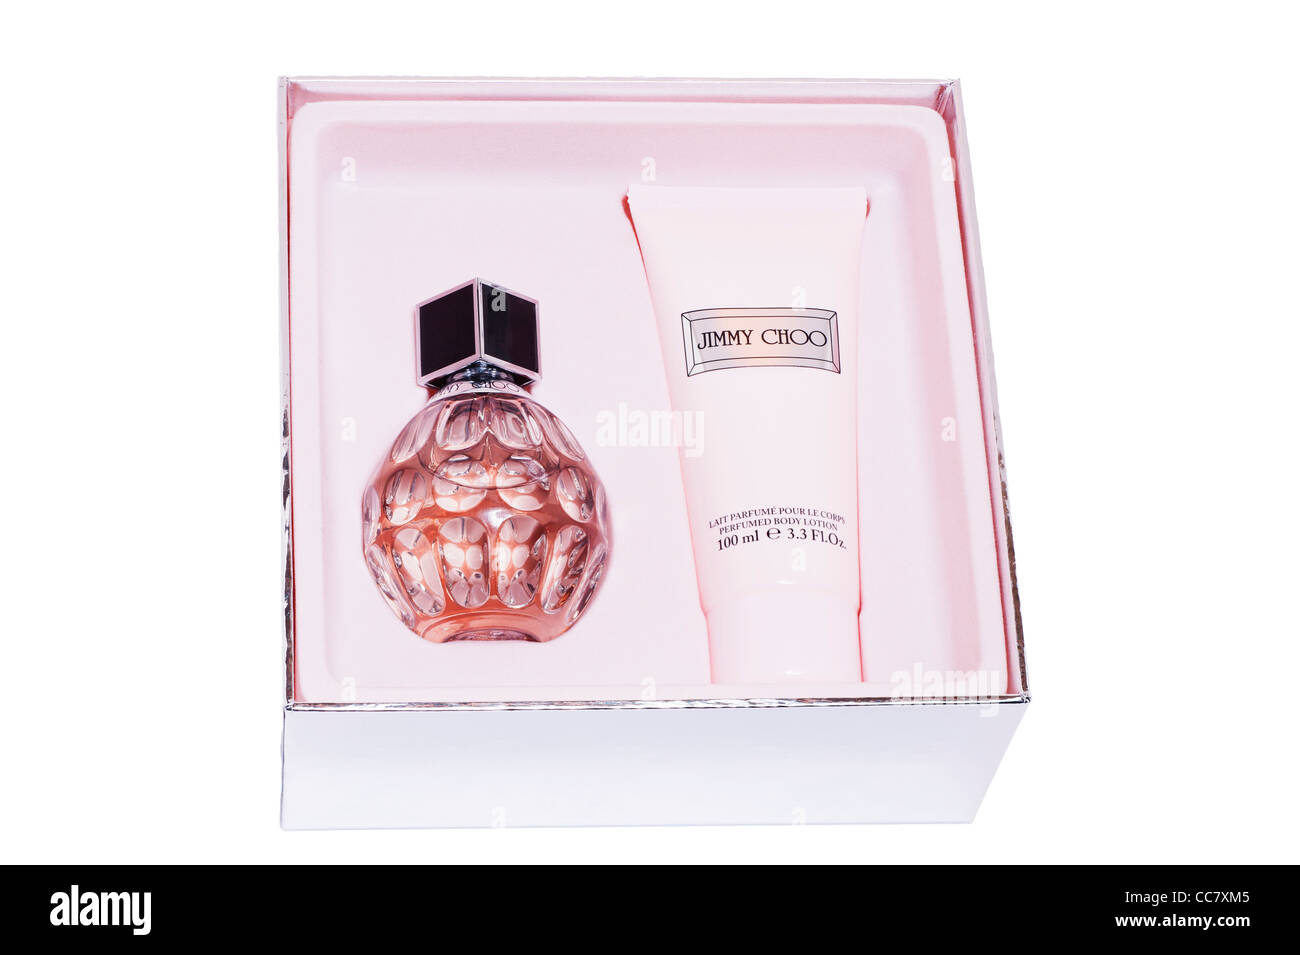 Un set de regalo de perfume y loción corporal de Jimmy Choo sobre un fondo blanco. Foto de stock